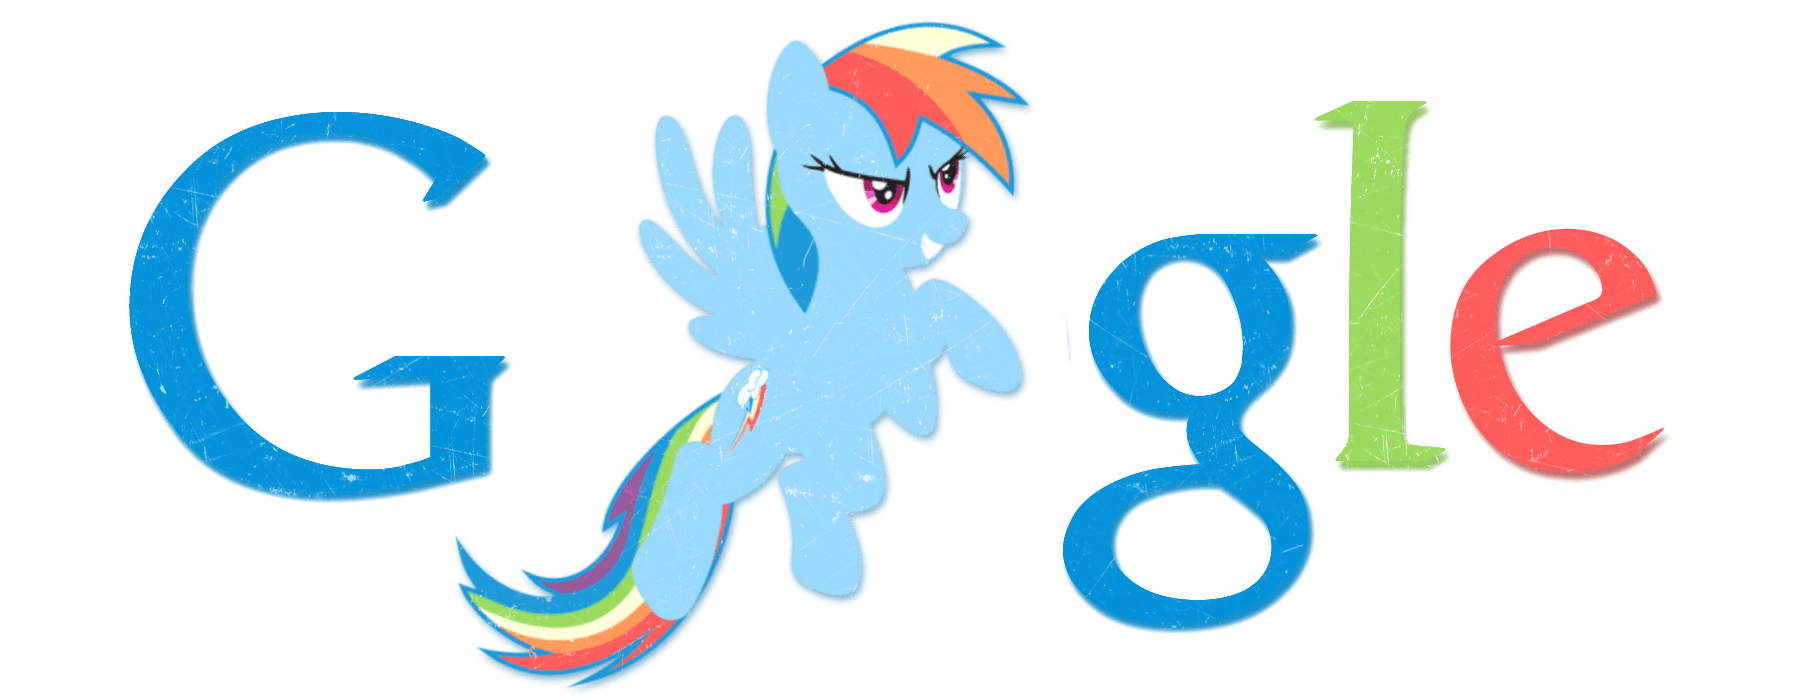 Best Google Logo - The Best Google Logo Little Pony (MLP) Logo